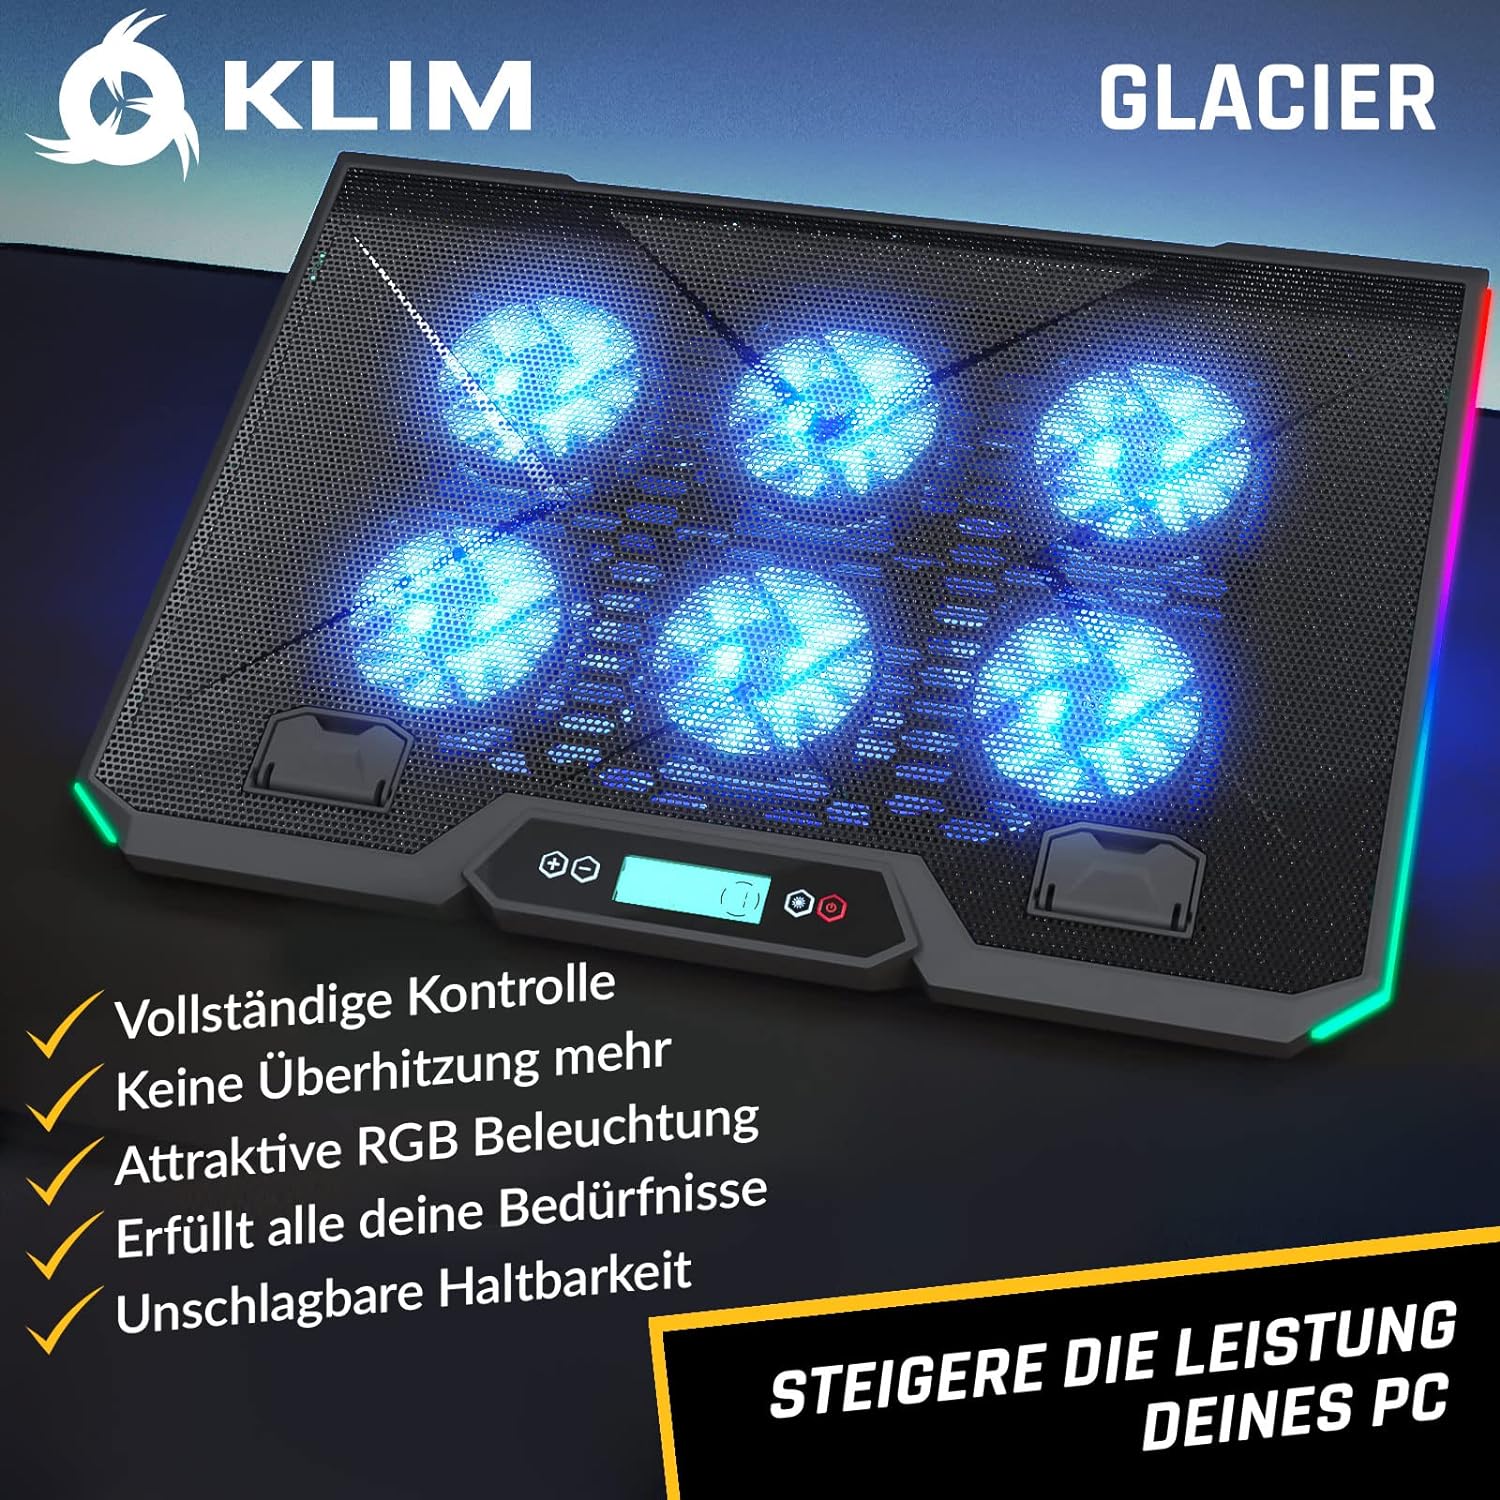 KLIM Glacier Laptop Kühler